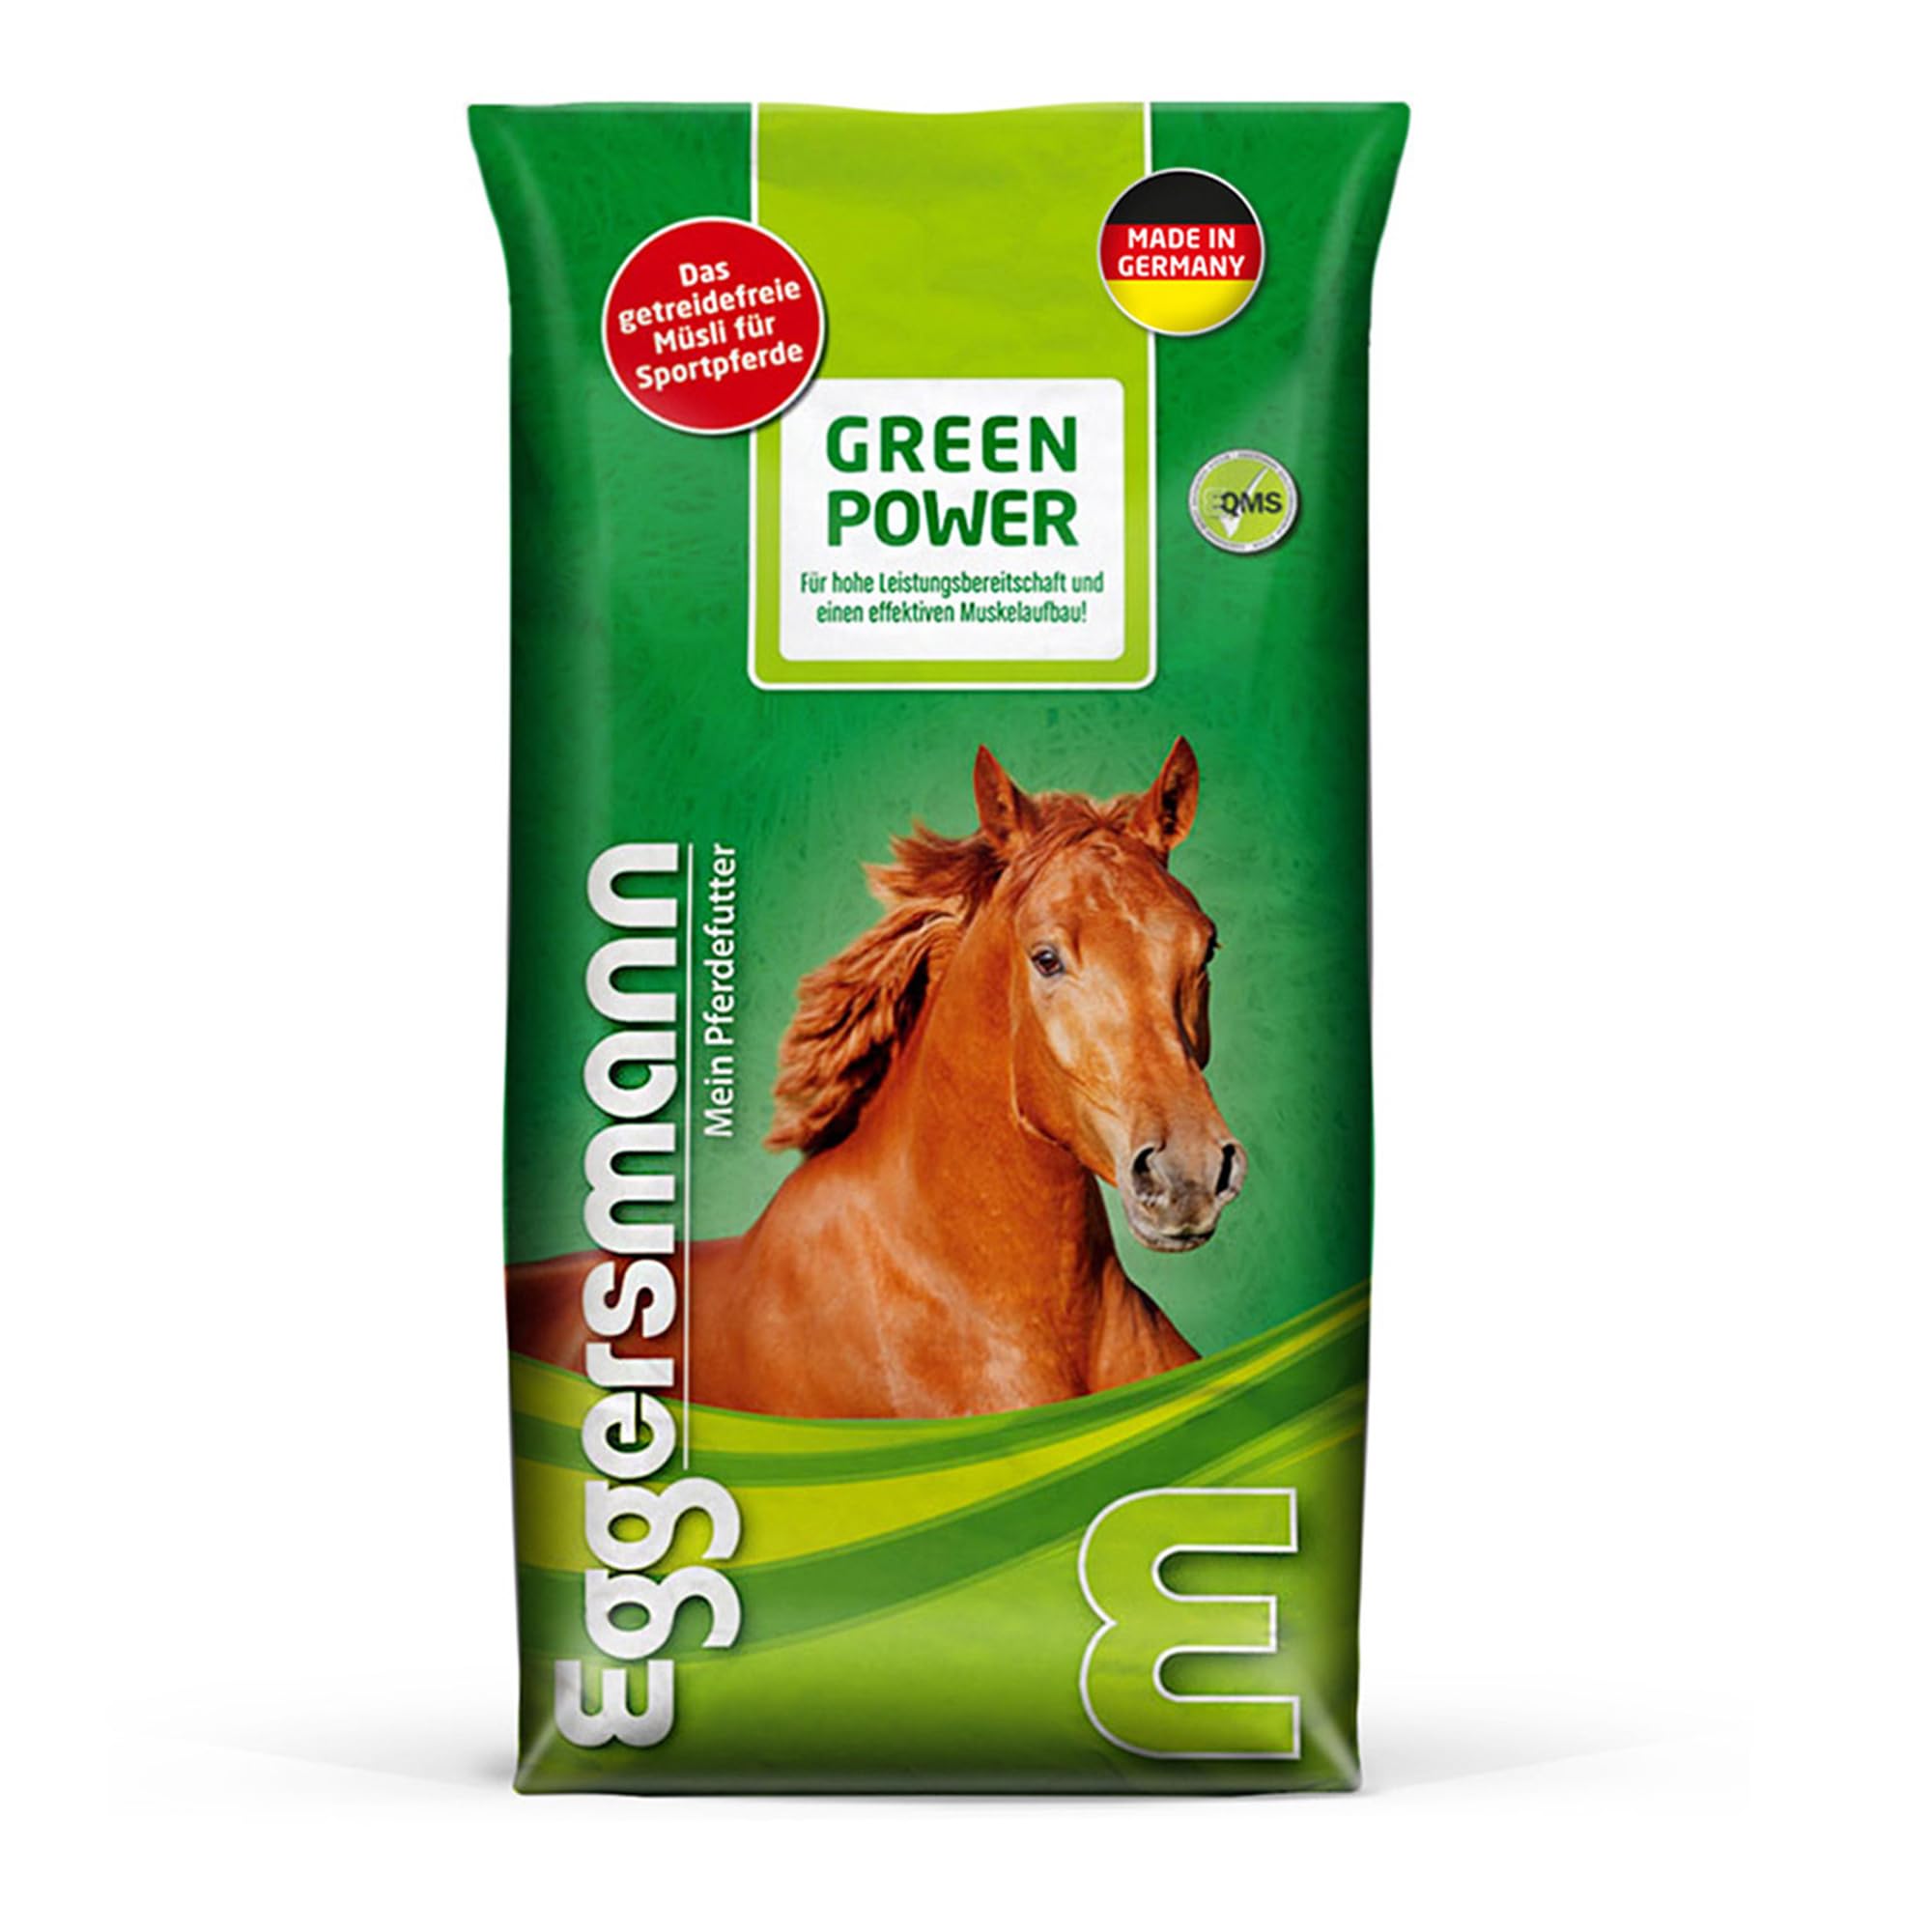 Eggersmann Green Power 20 kg - Pferdemüsli getreidefrei - Für leistungsbezogene Pferde im Training und Turniersport - Natürliches Eggersmann Pferdefutter